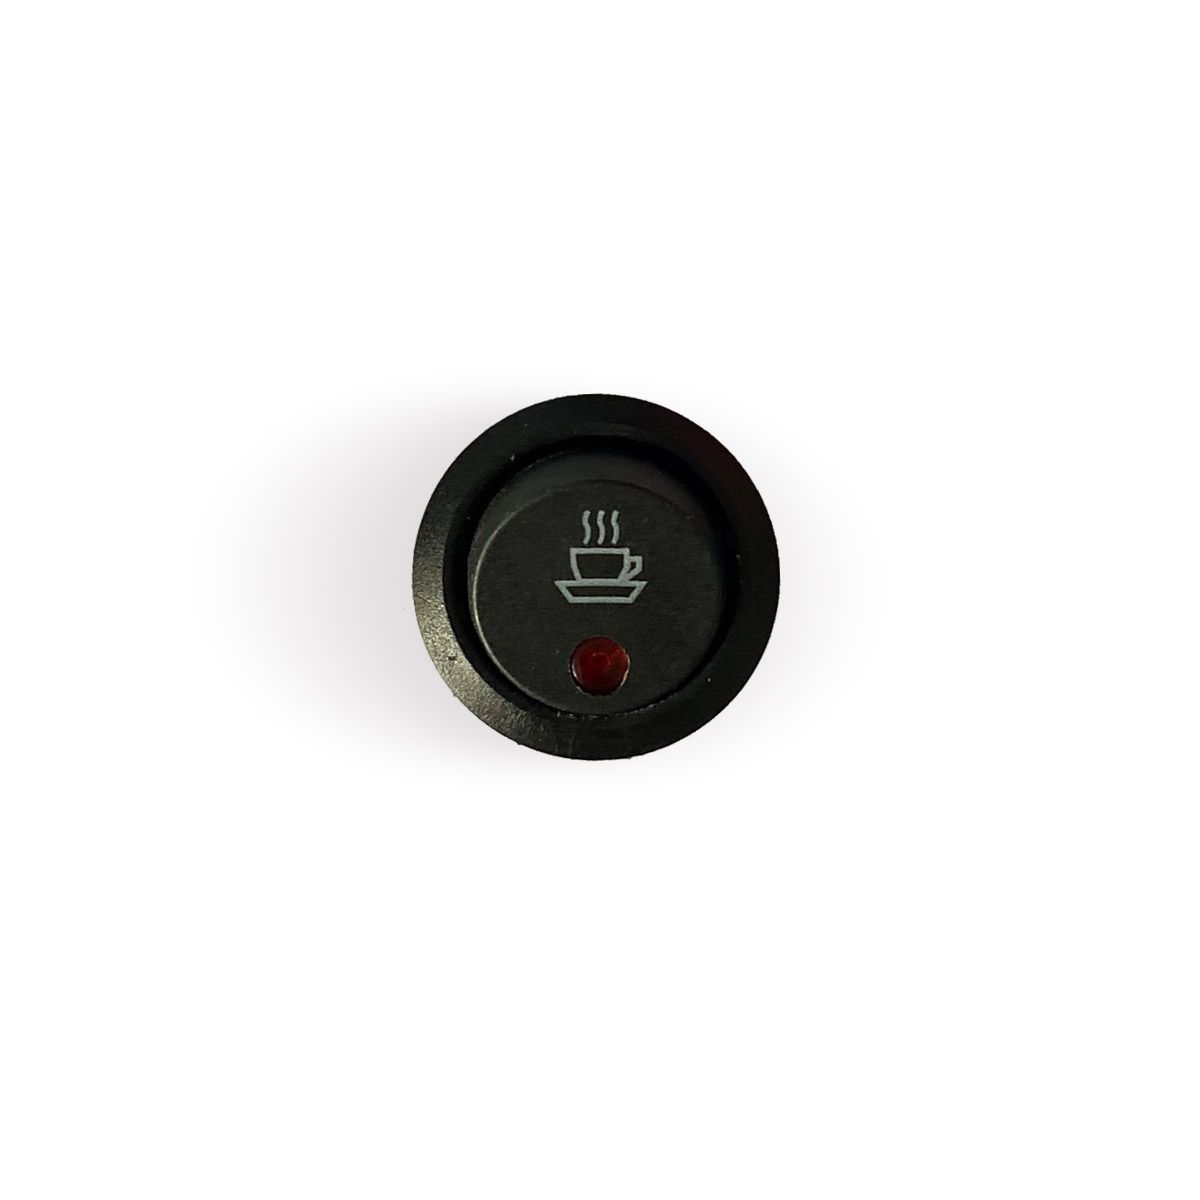 Aroma Dispense button